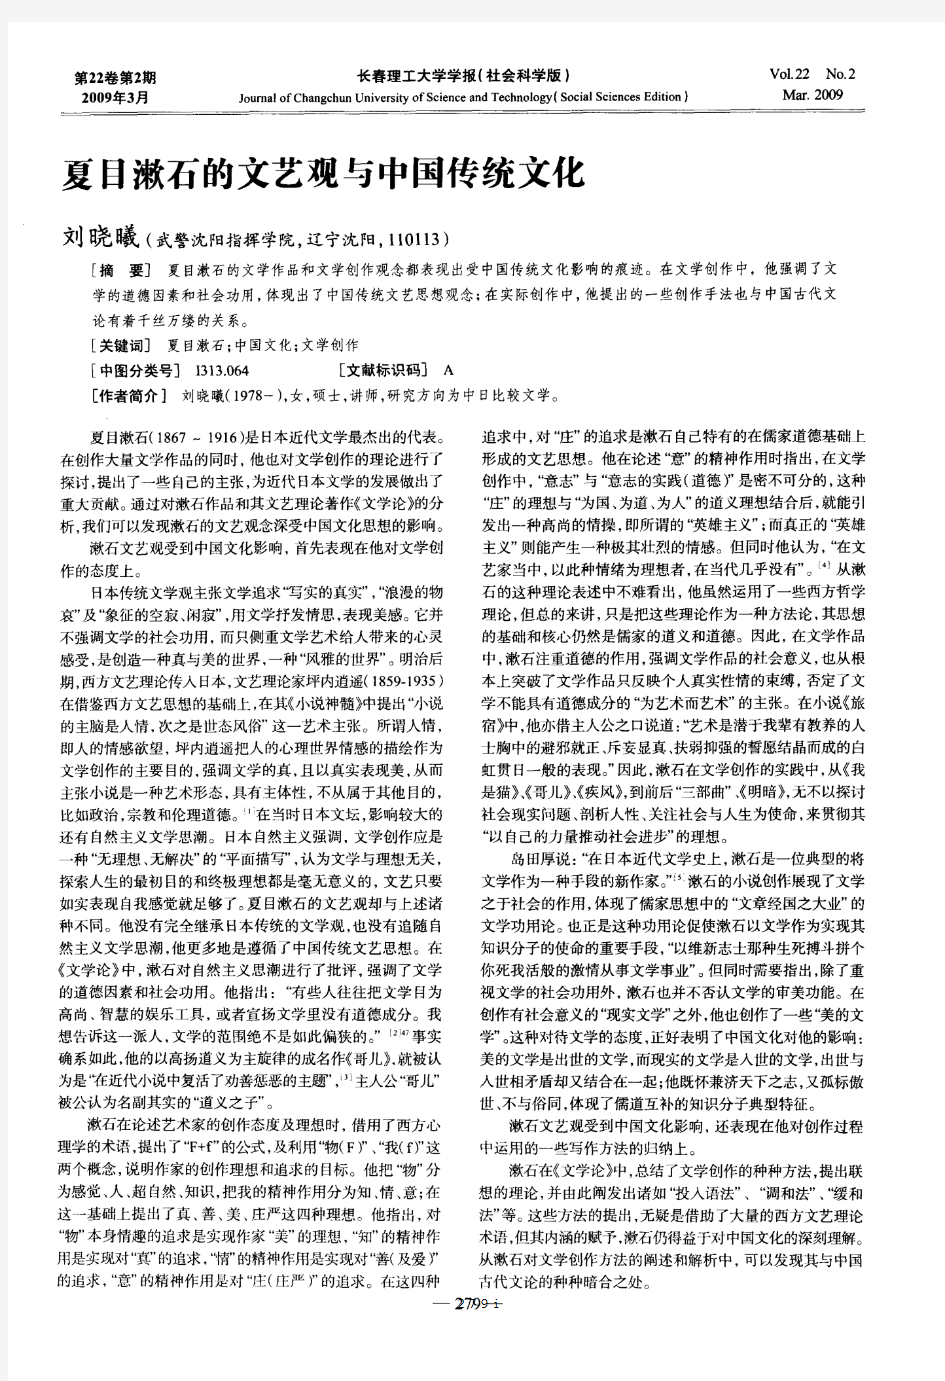 夏目漱石的文艺观与中国传统文化